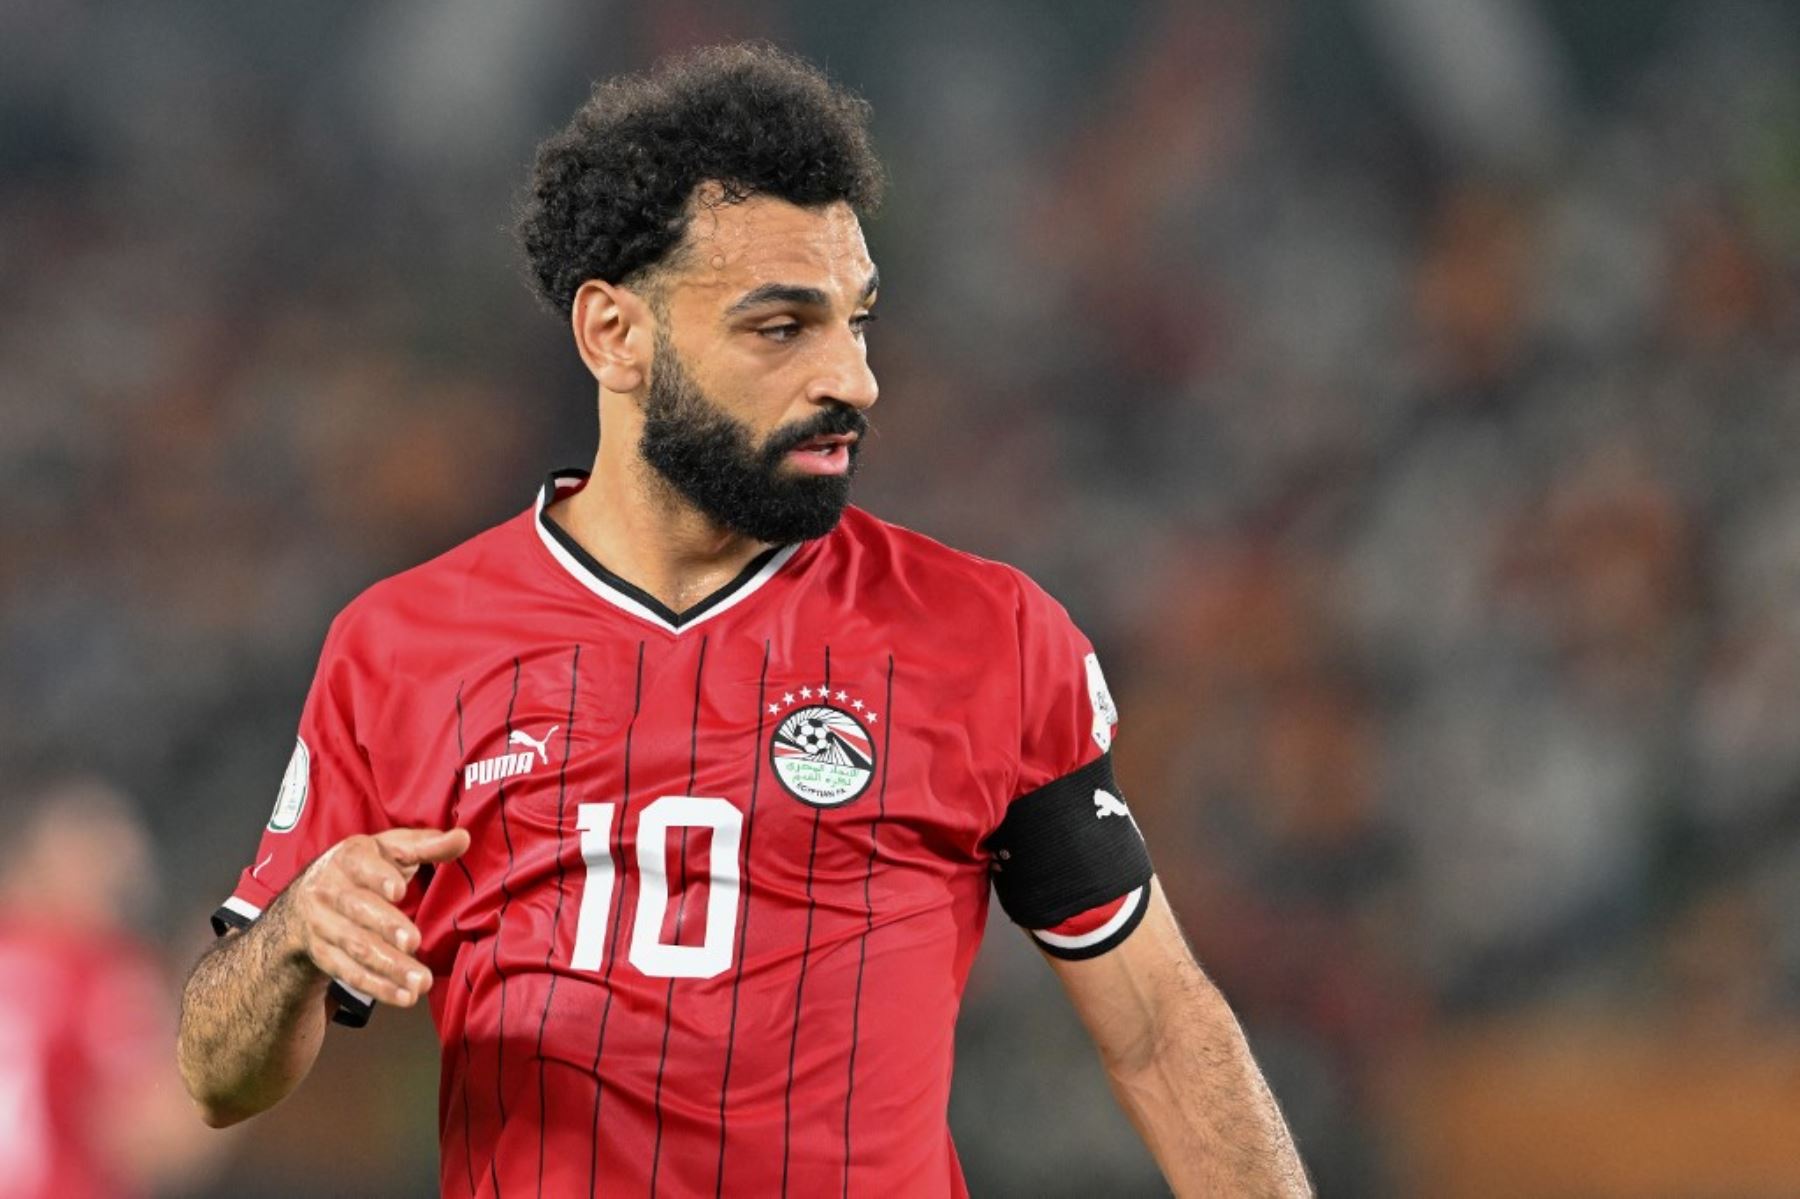 Mohamed Salah estará ausente de las canchas durante un período de 3 a 4 semanas debido a una lesión